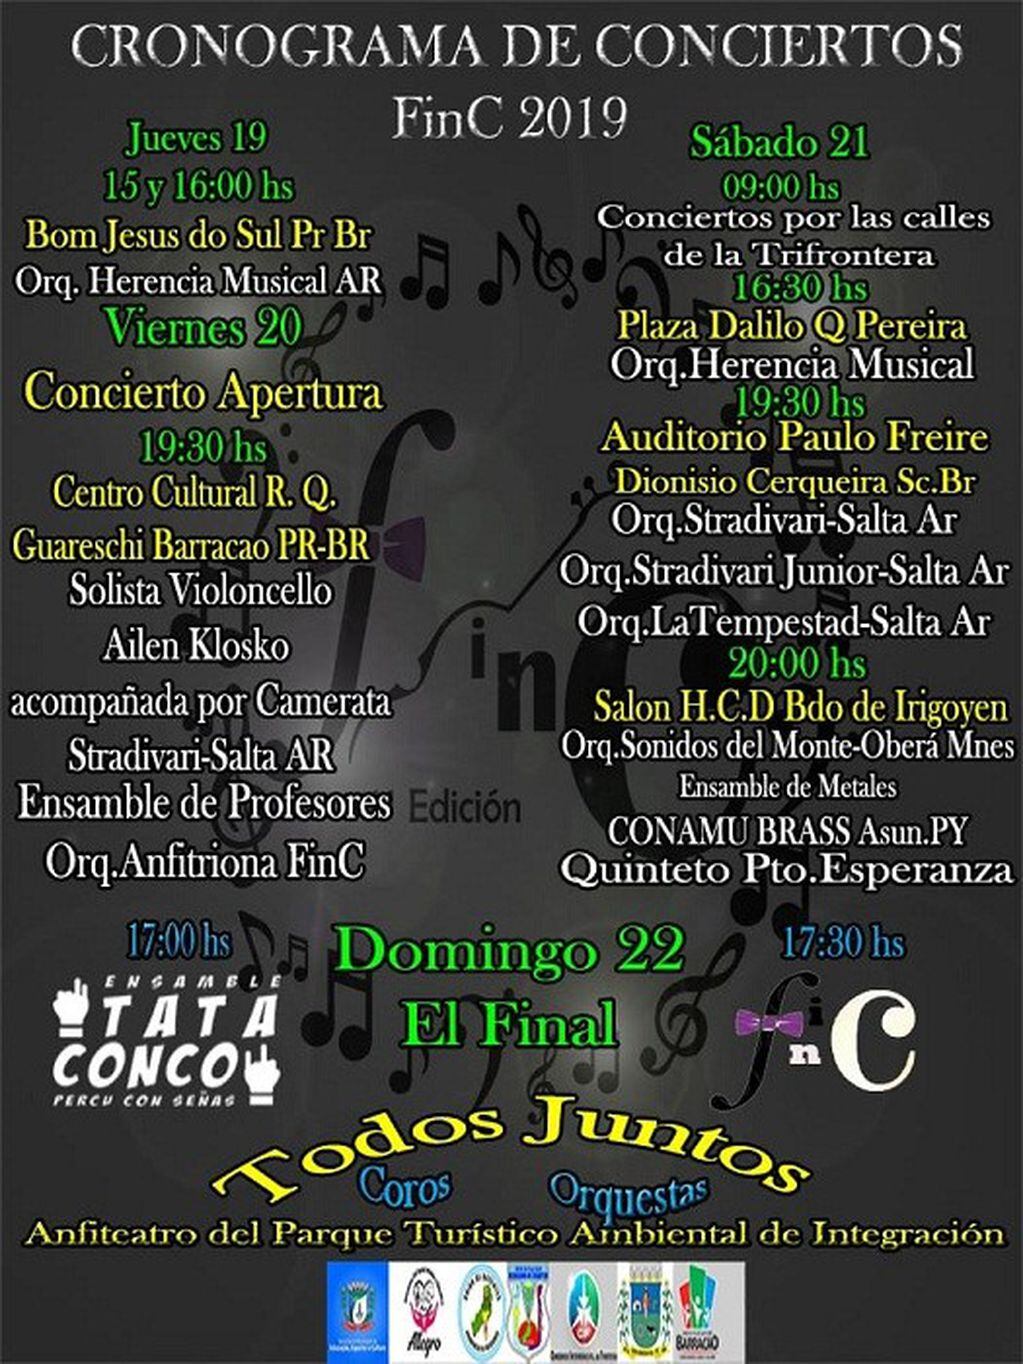 El programa de los conciertos en la frontera de Argentina y Brasil convocado por Bernardo de Irigoyen. (Irigoyen Informe)